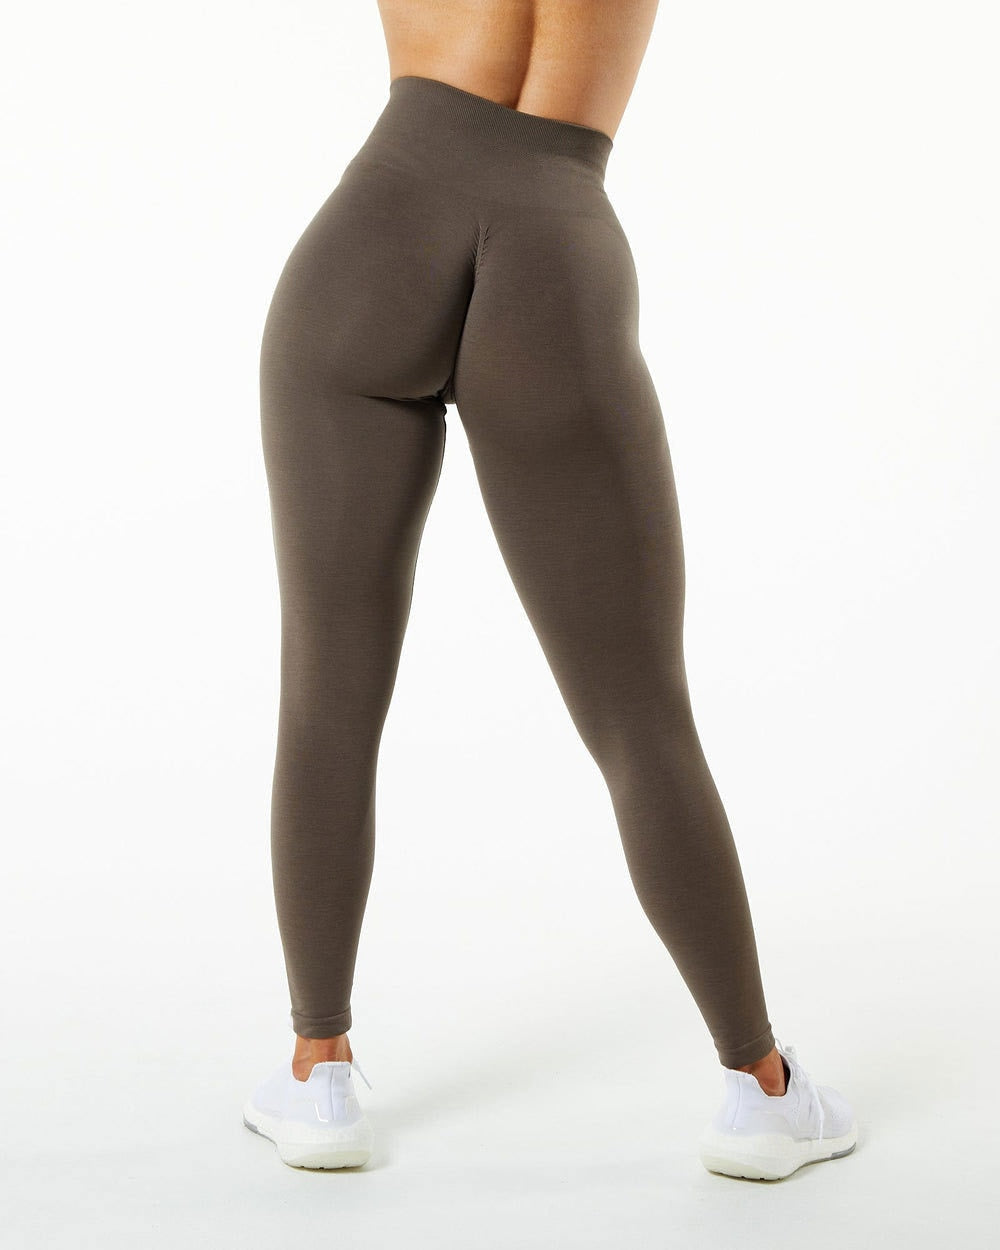 Ruffle Yoga Pants Activewear Truetights Coffee S 